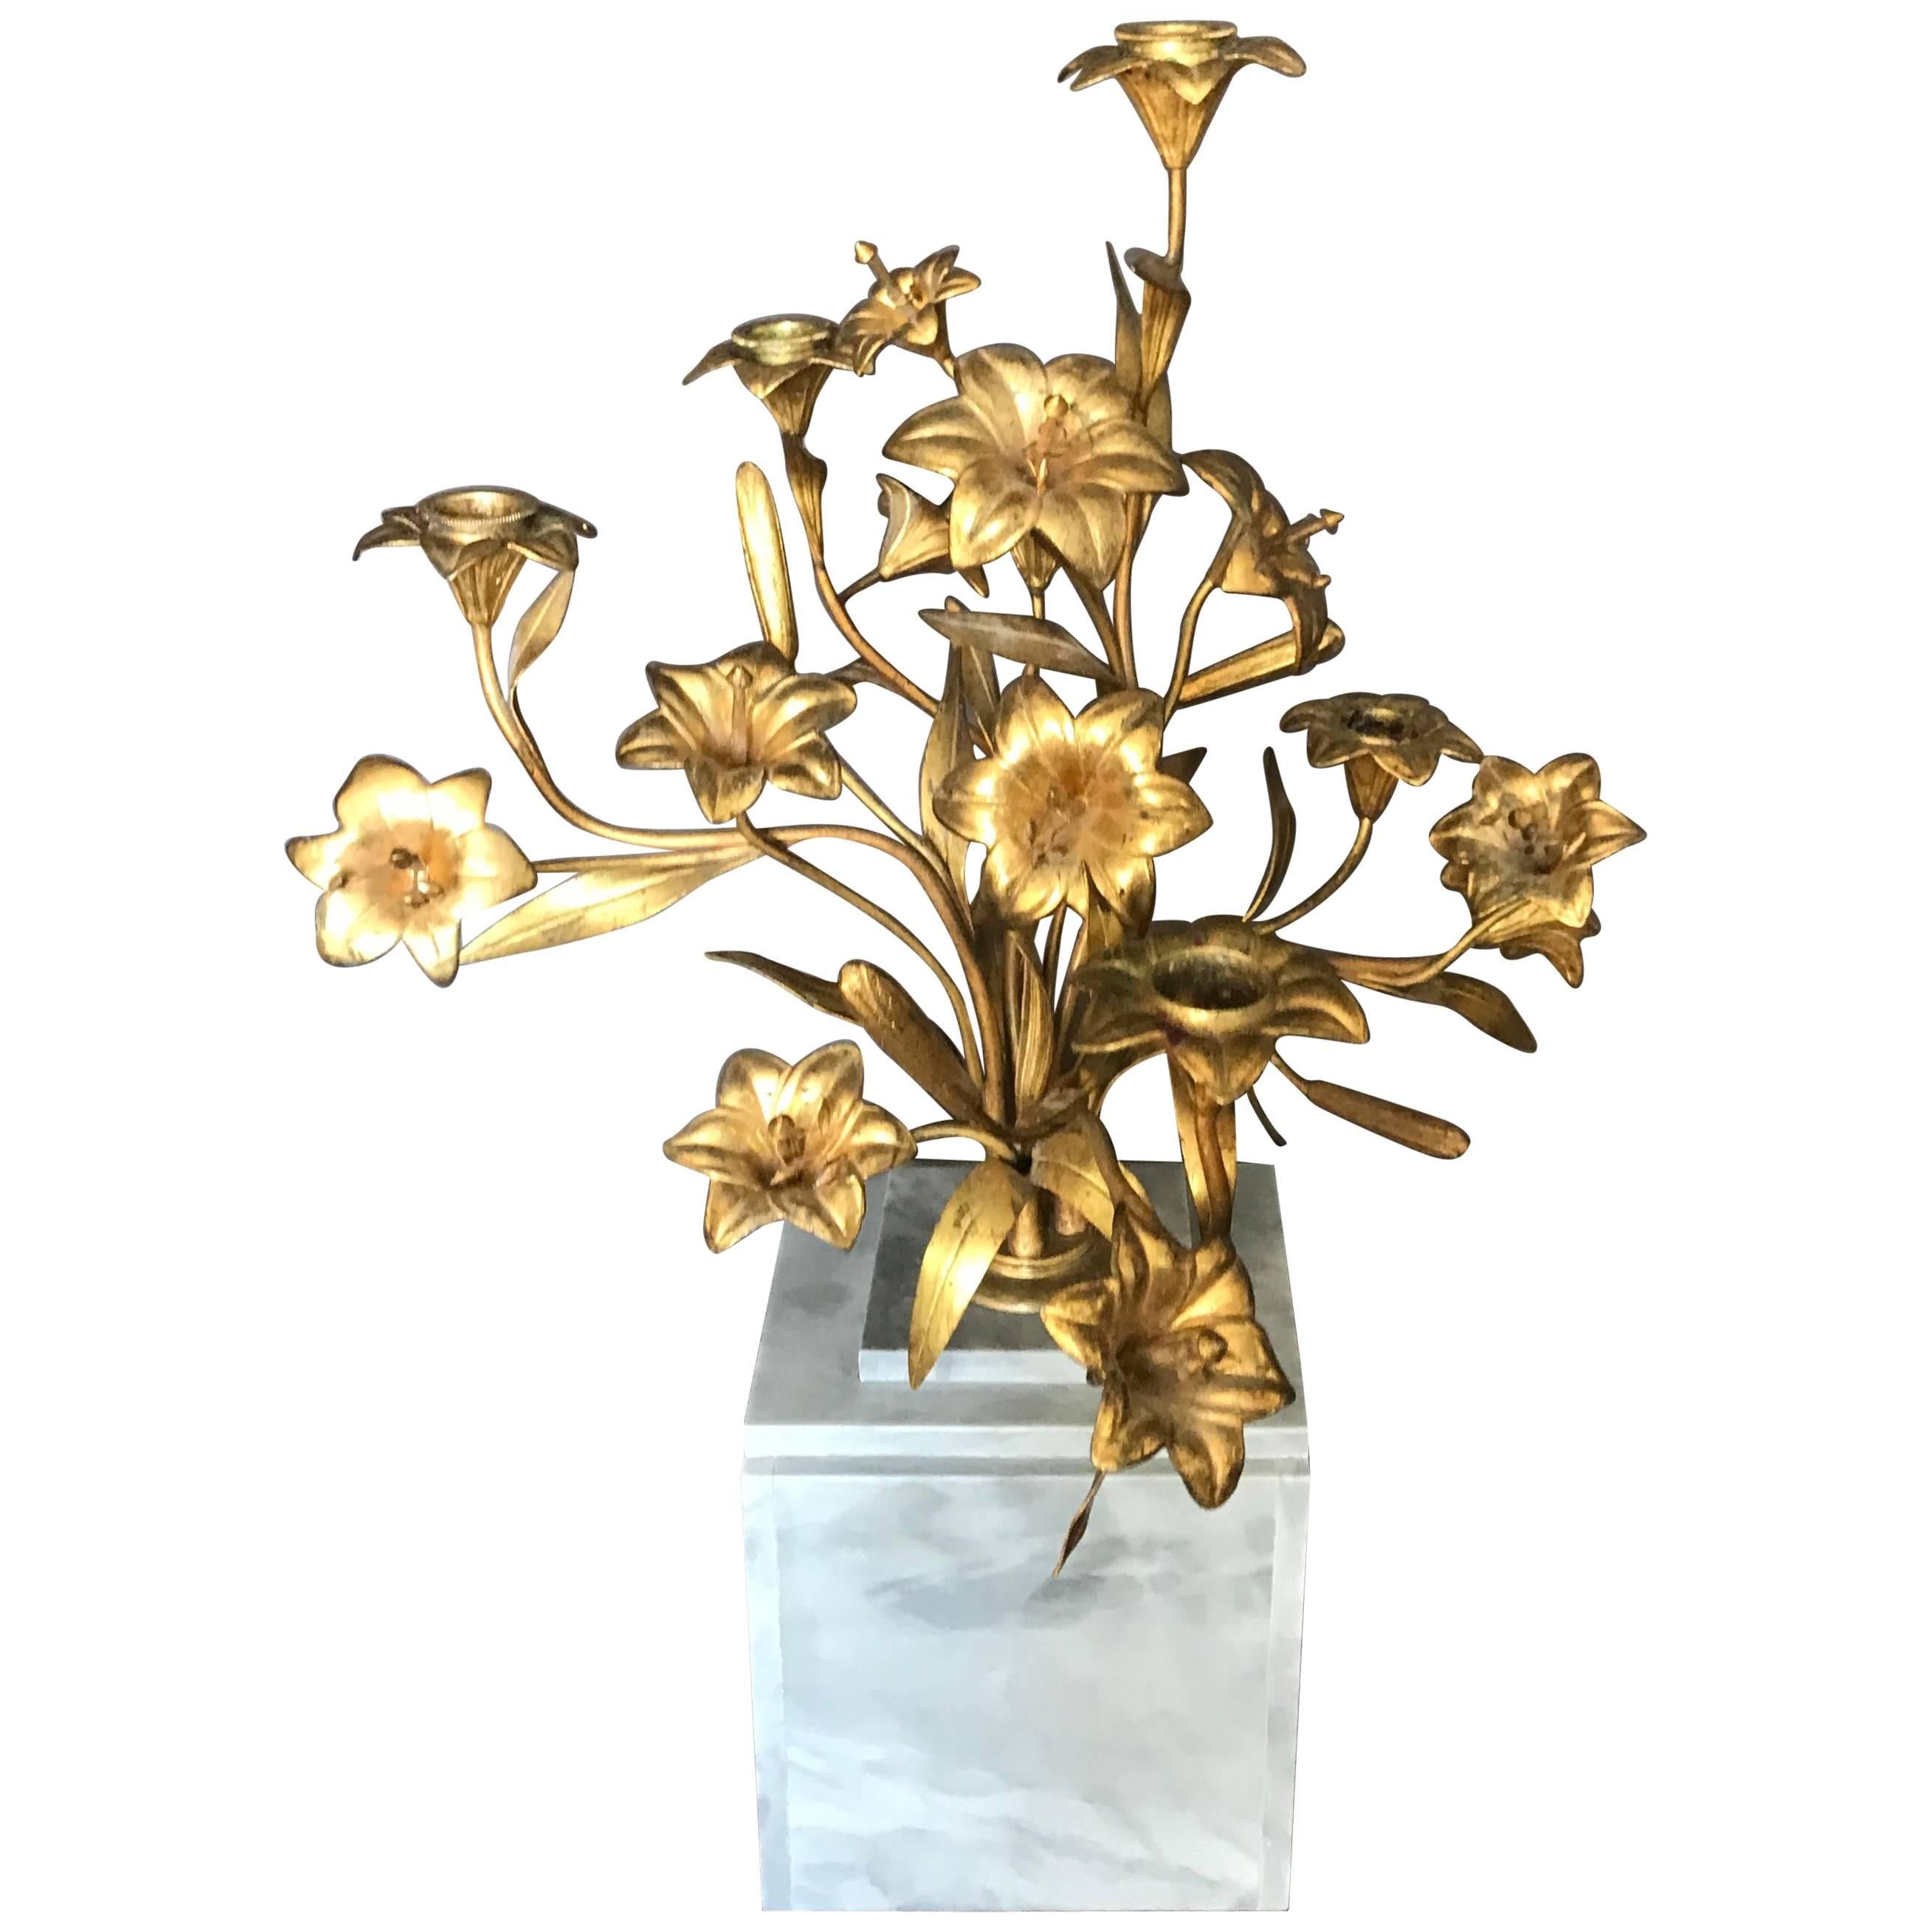 Lily-Kandelaber aus vergoldeter Bronze